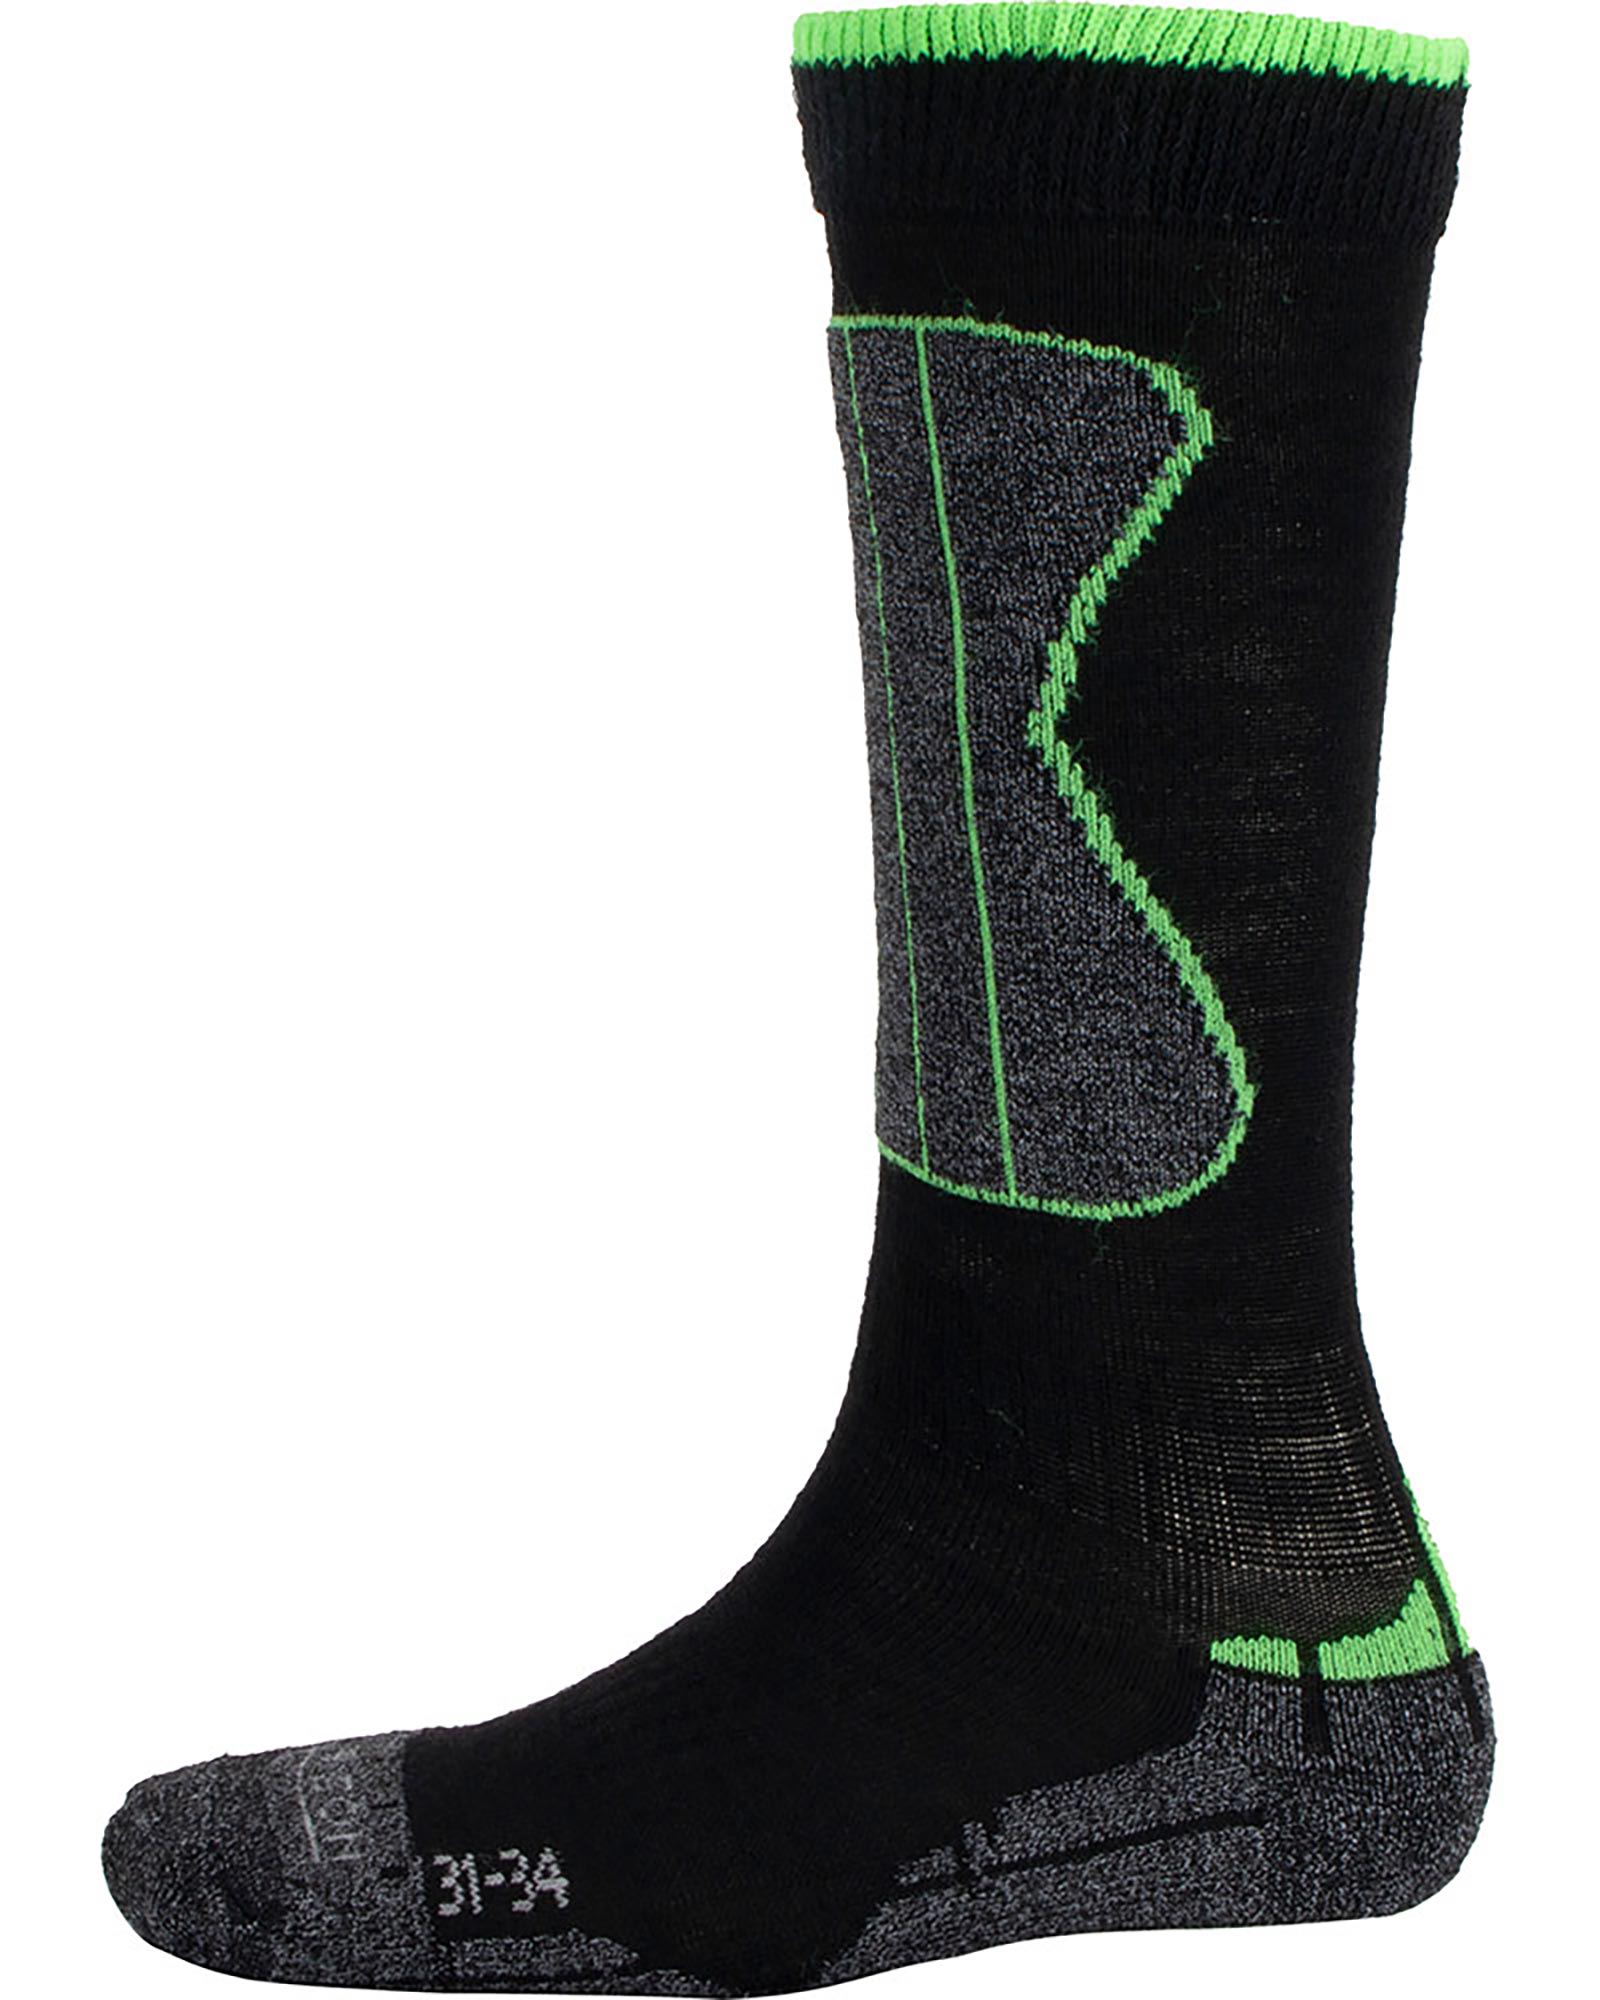 Ellis Brigham Wintersport Kids’ Socks - Black/Green L